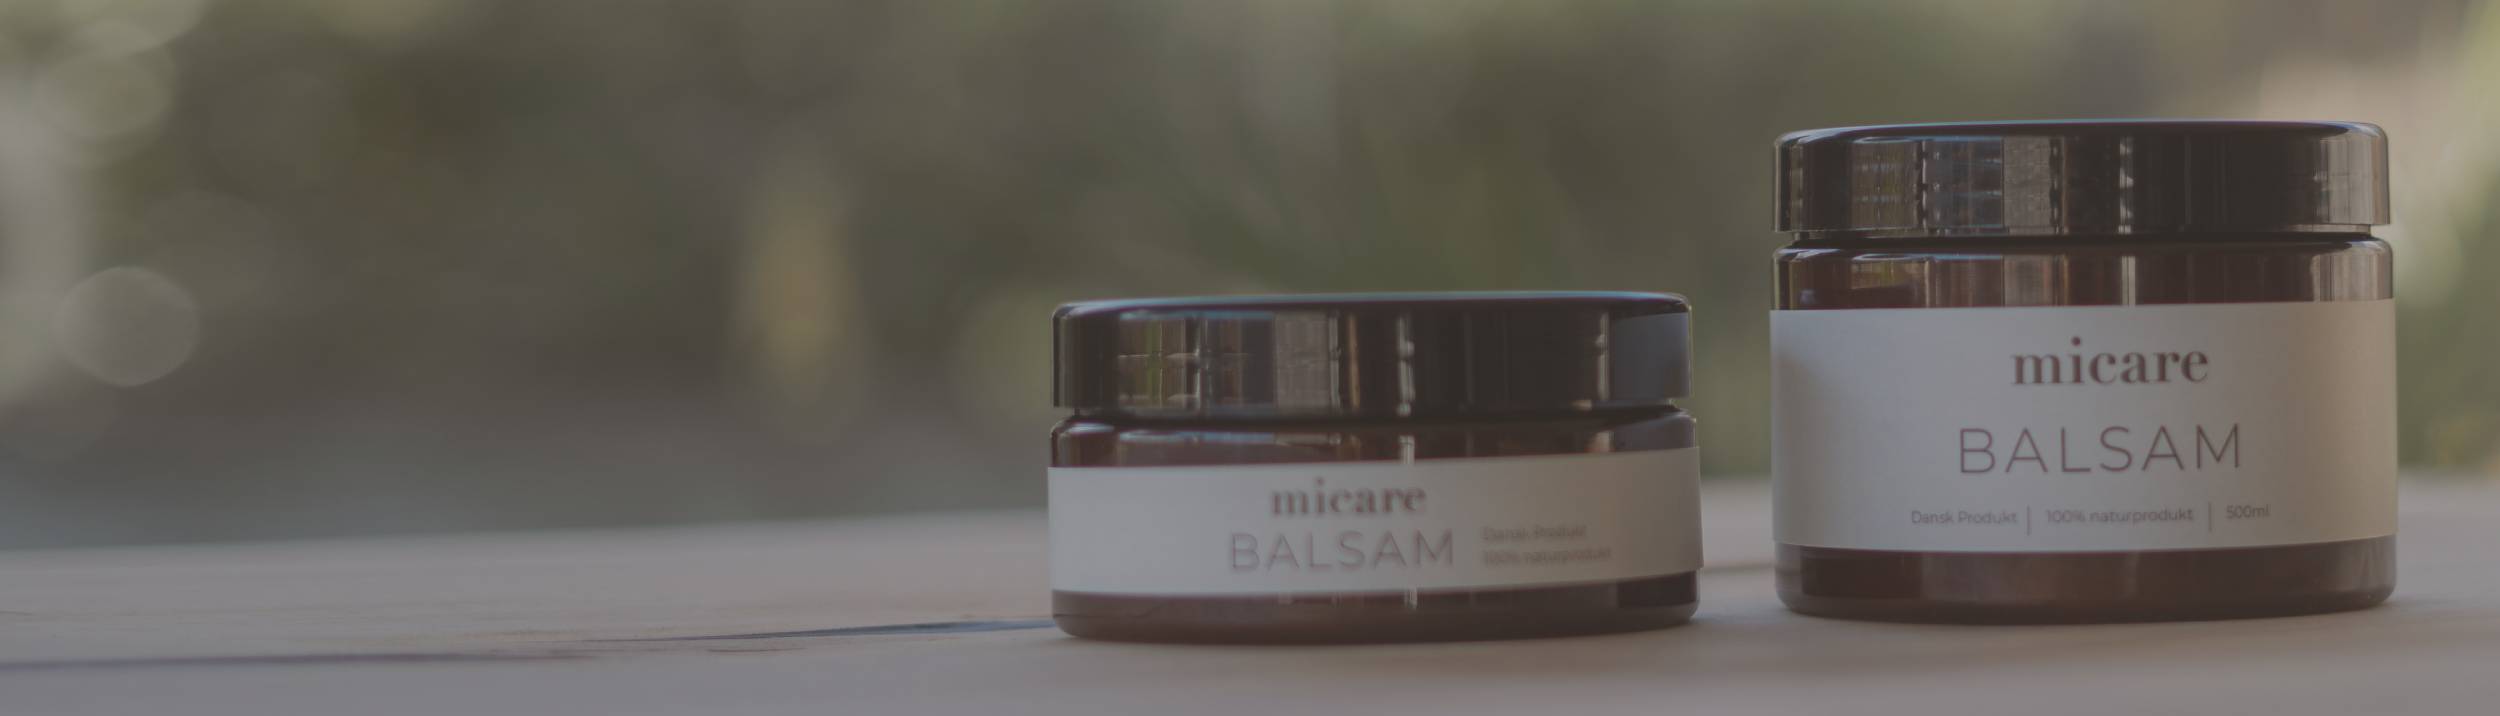 micare Balsam | beskytter læder og sten micare balsam er et 100% naturprodukt, bestående af kokosfedt, lanolin og bivoks. 